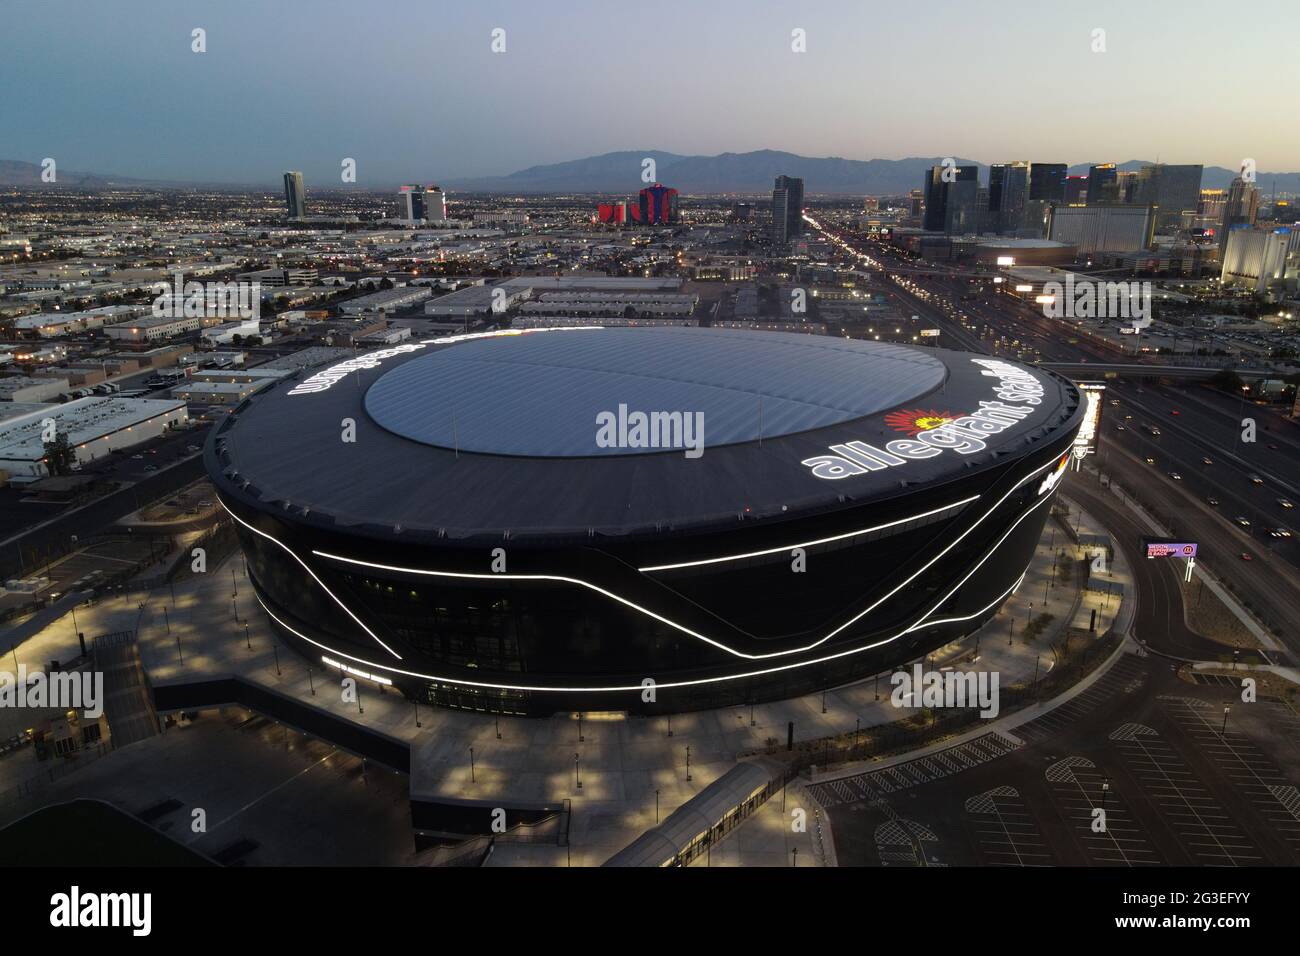 Una vista aerea dello stadio Allegiant, lunedì 8 marzo 2021, a Las Vegas. Lo stadio è la sede dei Las Vegas Raiders e dei ribelli dell'UNLV. Foto Stock